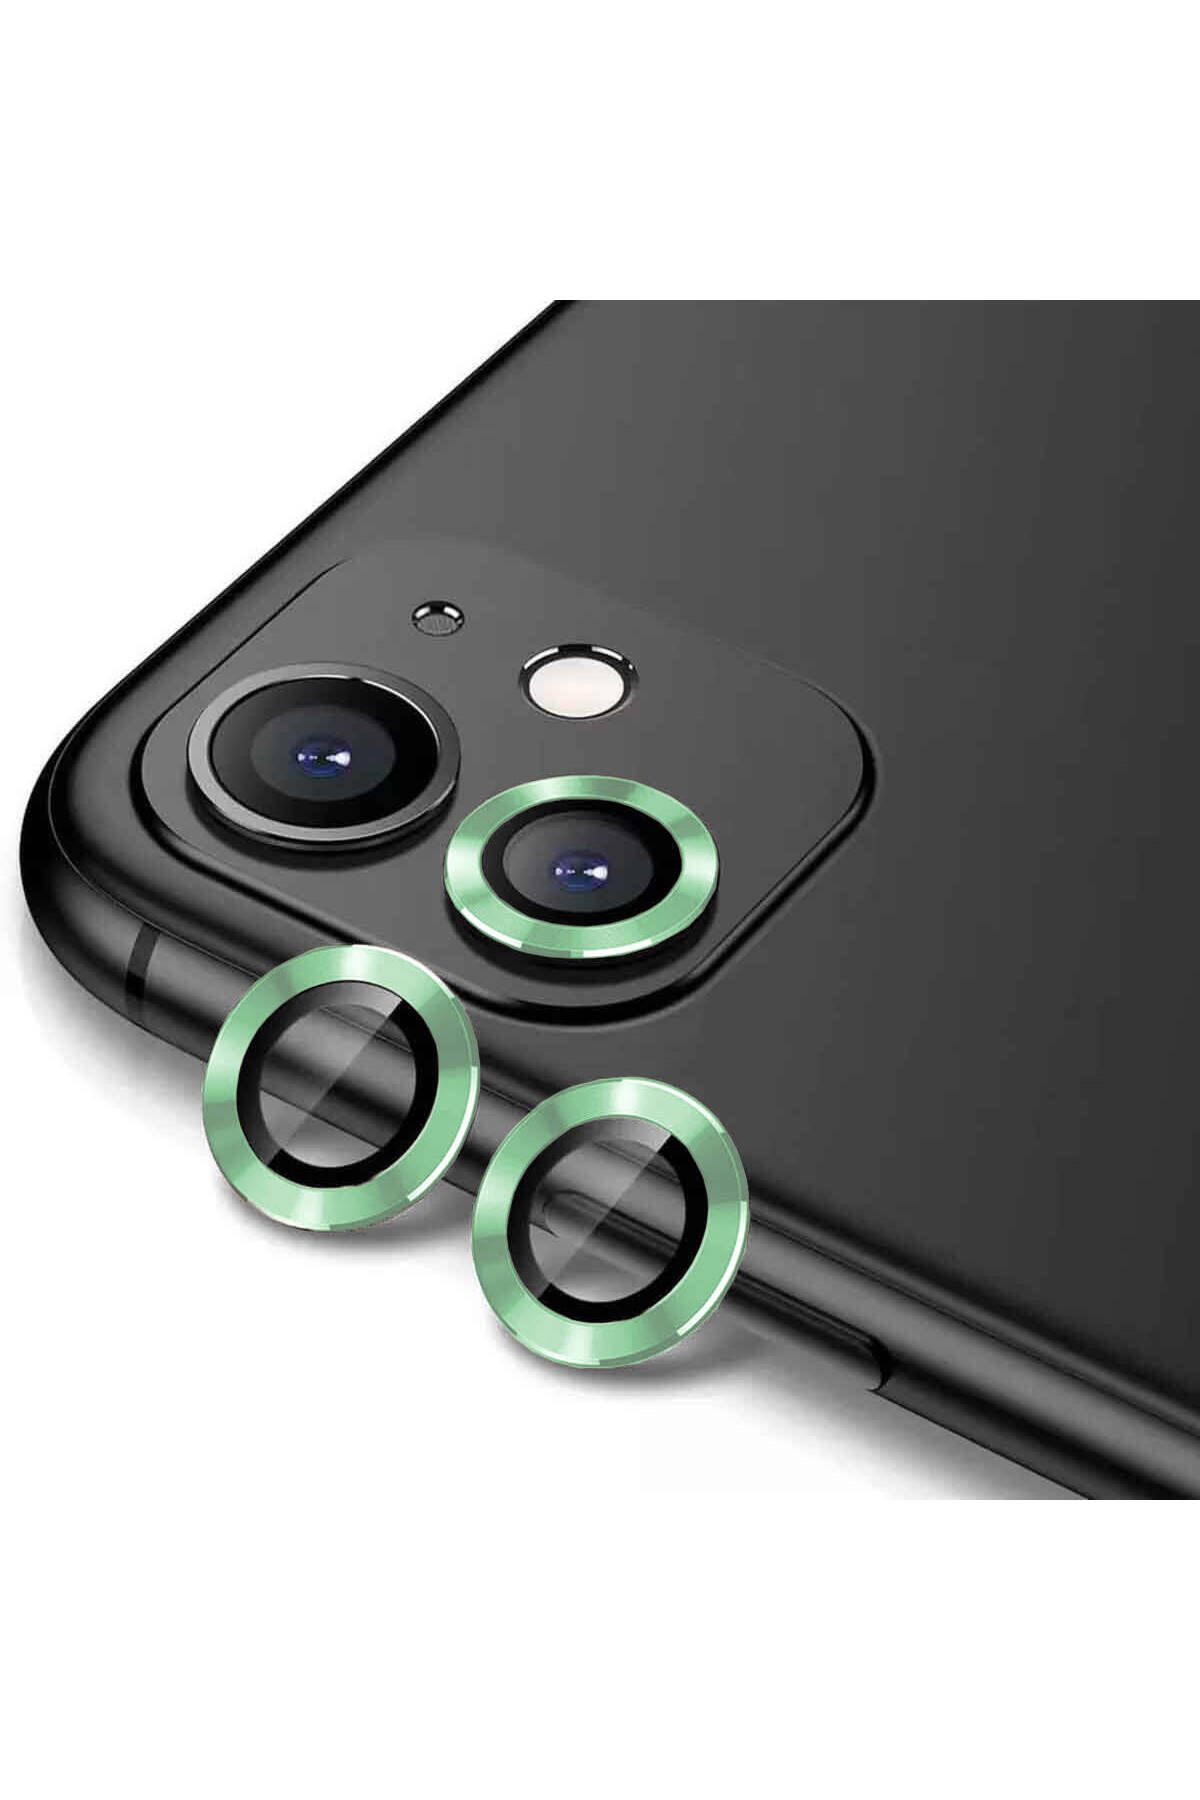 CEPCASE Apple iPhone 11 Kamera Lens Koruyucu Exclusive Premium Sapphire Tak Yapıştır Lens Koruma